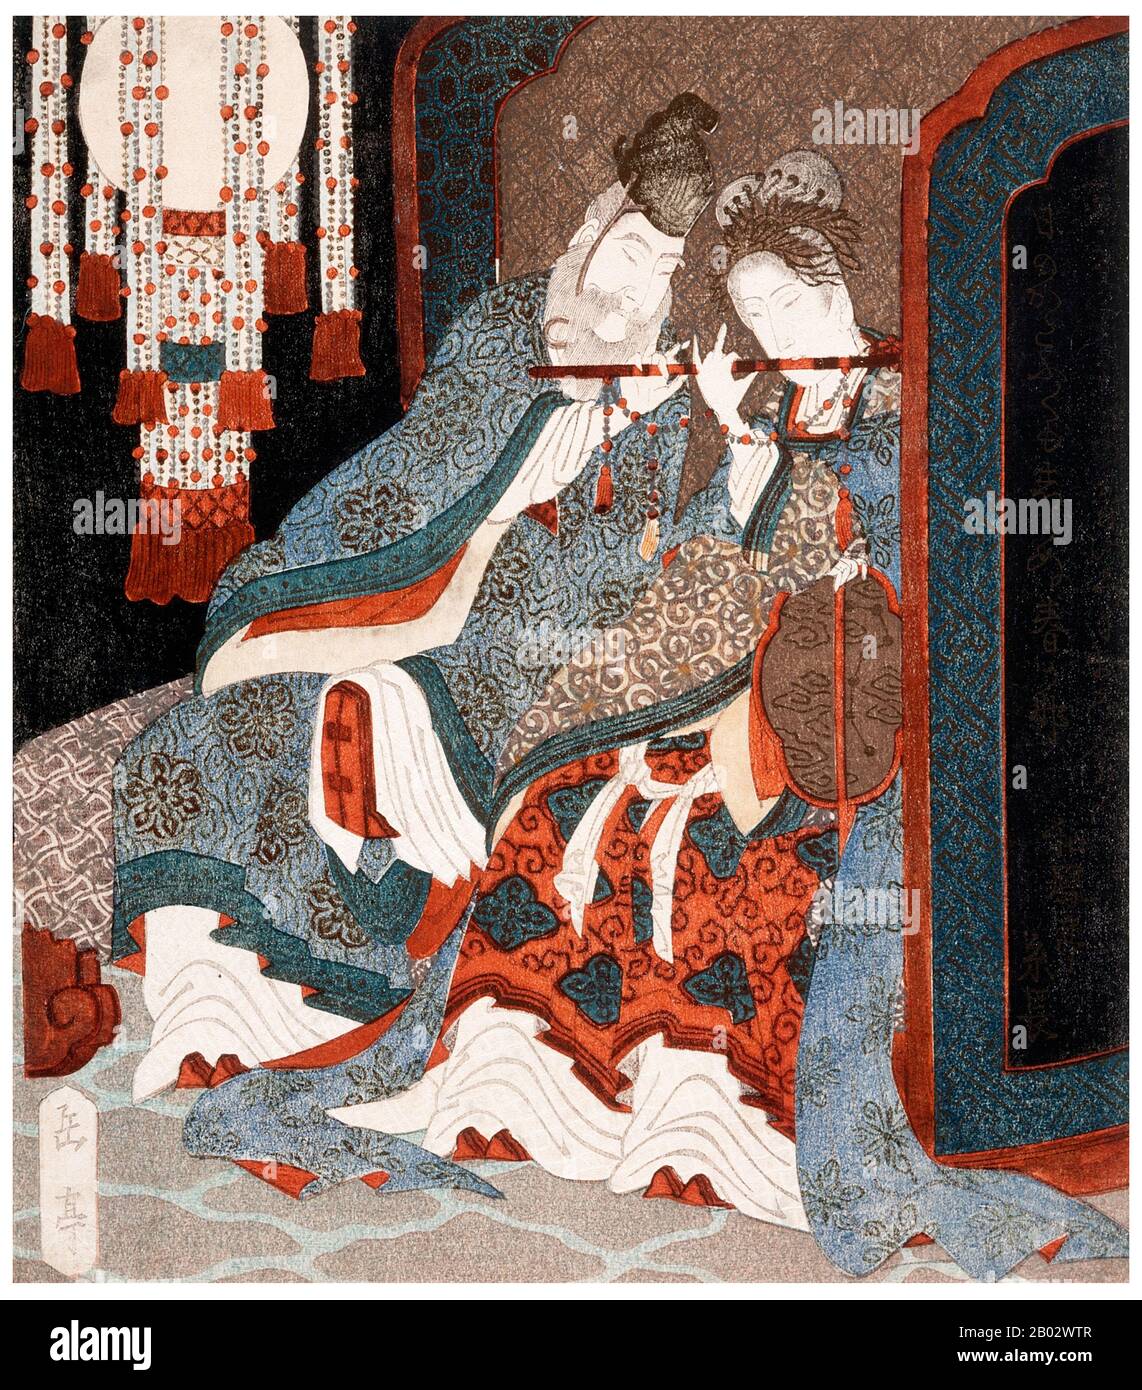 Consort Yang Yuhuan (1er juin 719 — 15 juillet 756), souvent connu sous le nom de Yang Guifei (Guifei étant le plus haut rang pour les consorts impériaux pendant son temps), connu brièvement par le nom taoïste Taizhen, est célèbre comme l'une des Quatre Beautés de la Chine ancienne. Elle était la consort bien-aimée de l'empereur Xuanzong de Tang au cours de ses années ultérieures. Pendant la Rébellion d'Anshi, alors que l'empereur Xuanzong fuyait de la capitale Chang'an à Chengdu, elle a été tuée parce que ses gardes ont accusé la rébellion de sa cousine puissante Yang Guozhong et du reste de sa famille. Banque D'Images